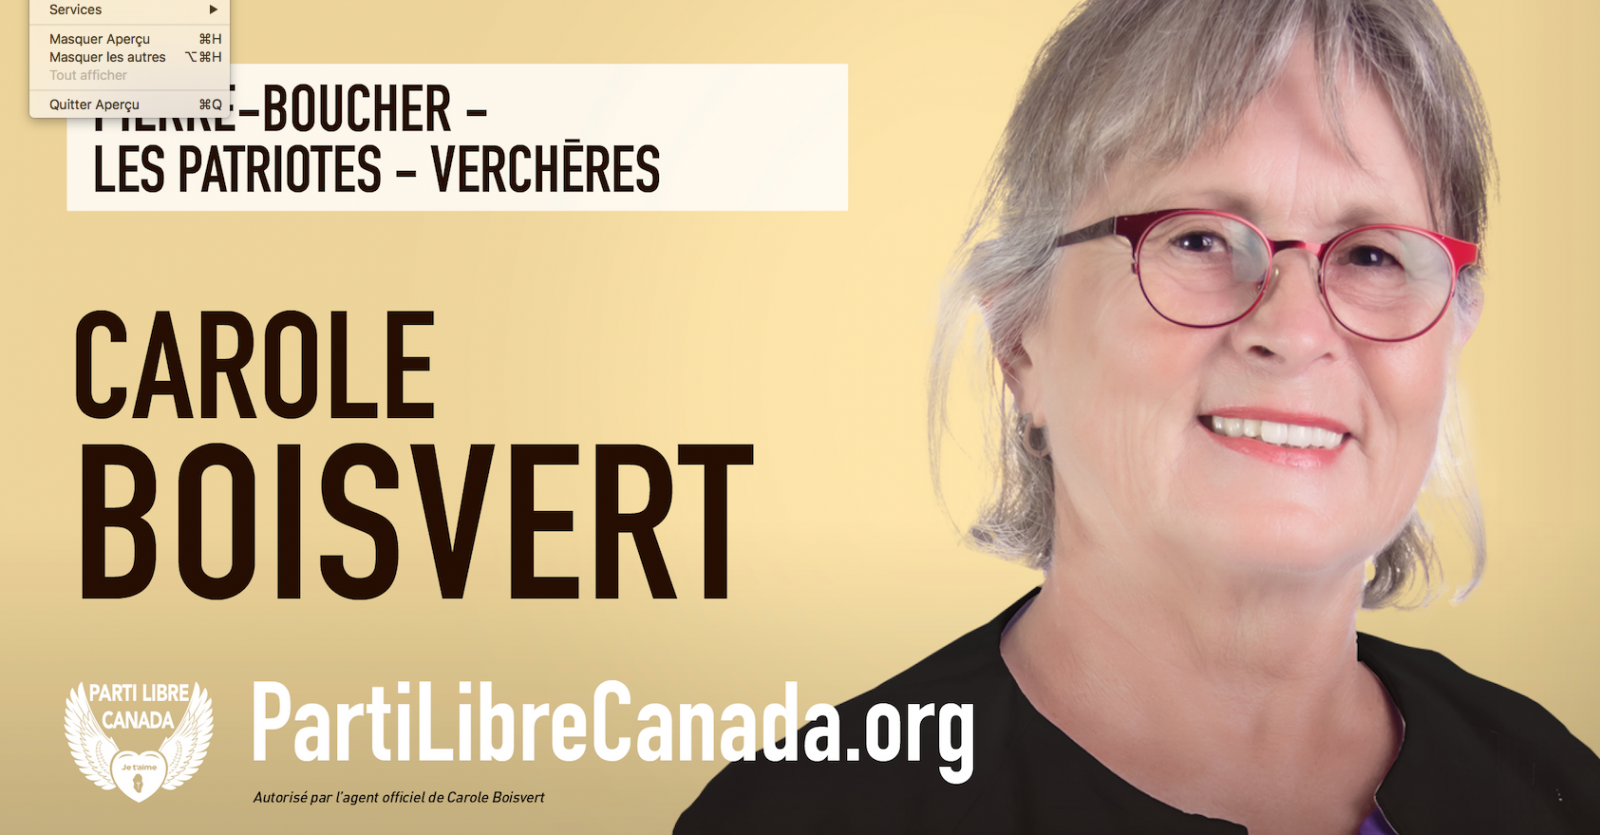 Les quatre actions prioritaires de Carole Boisvert au sein Parti Libre Canada